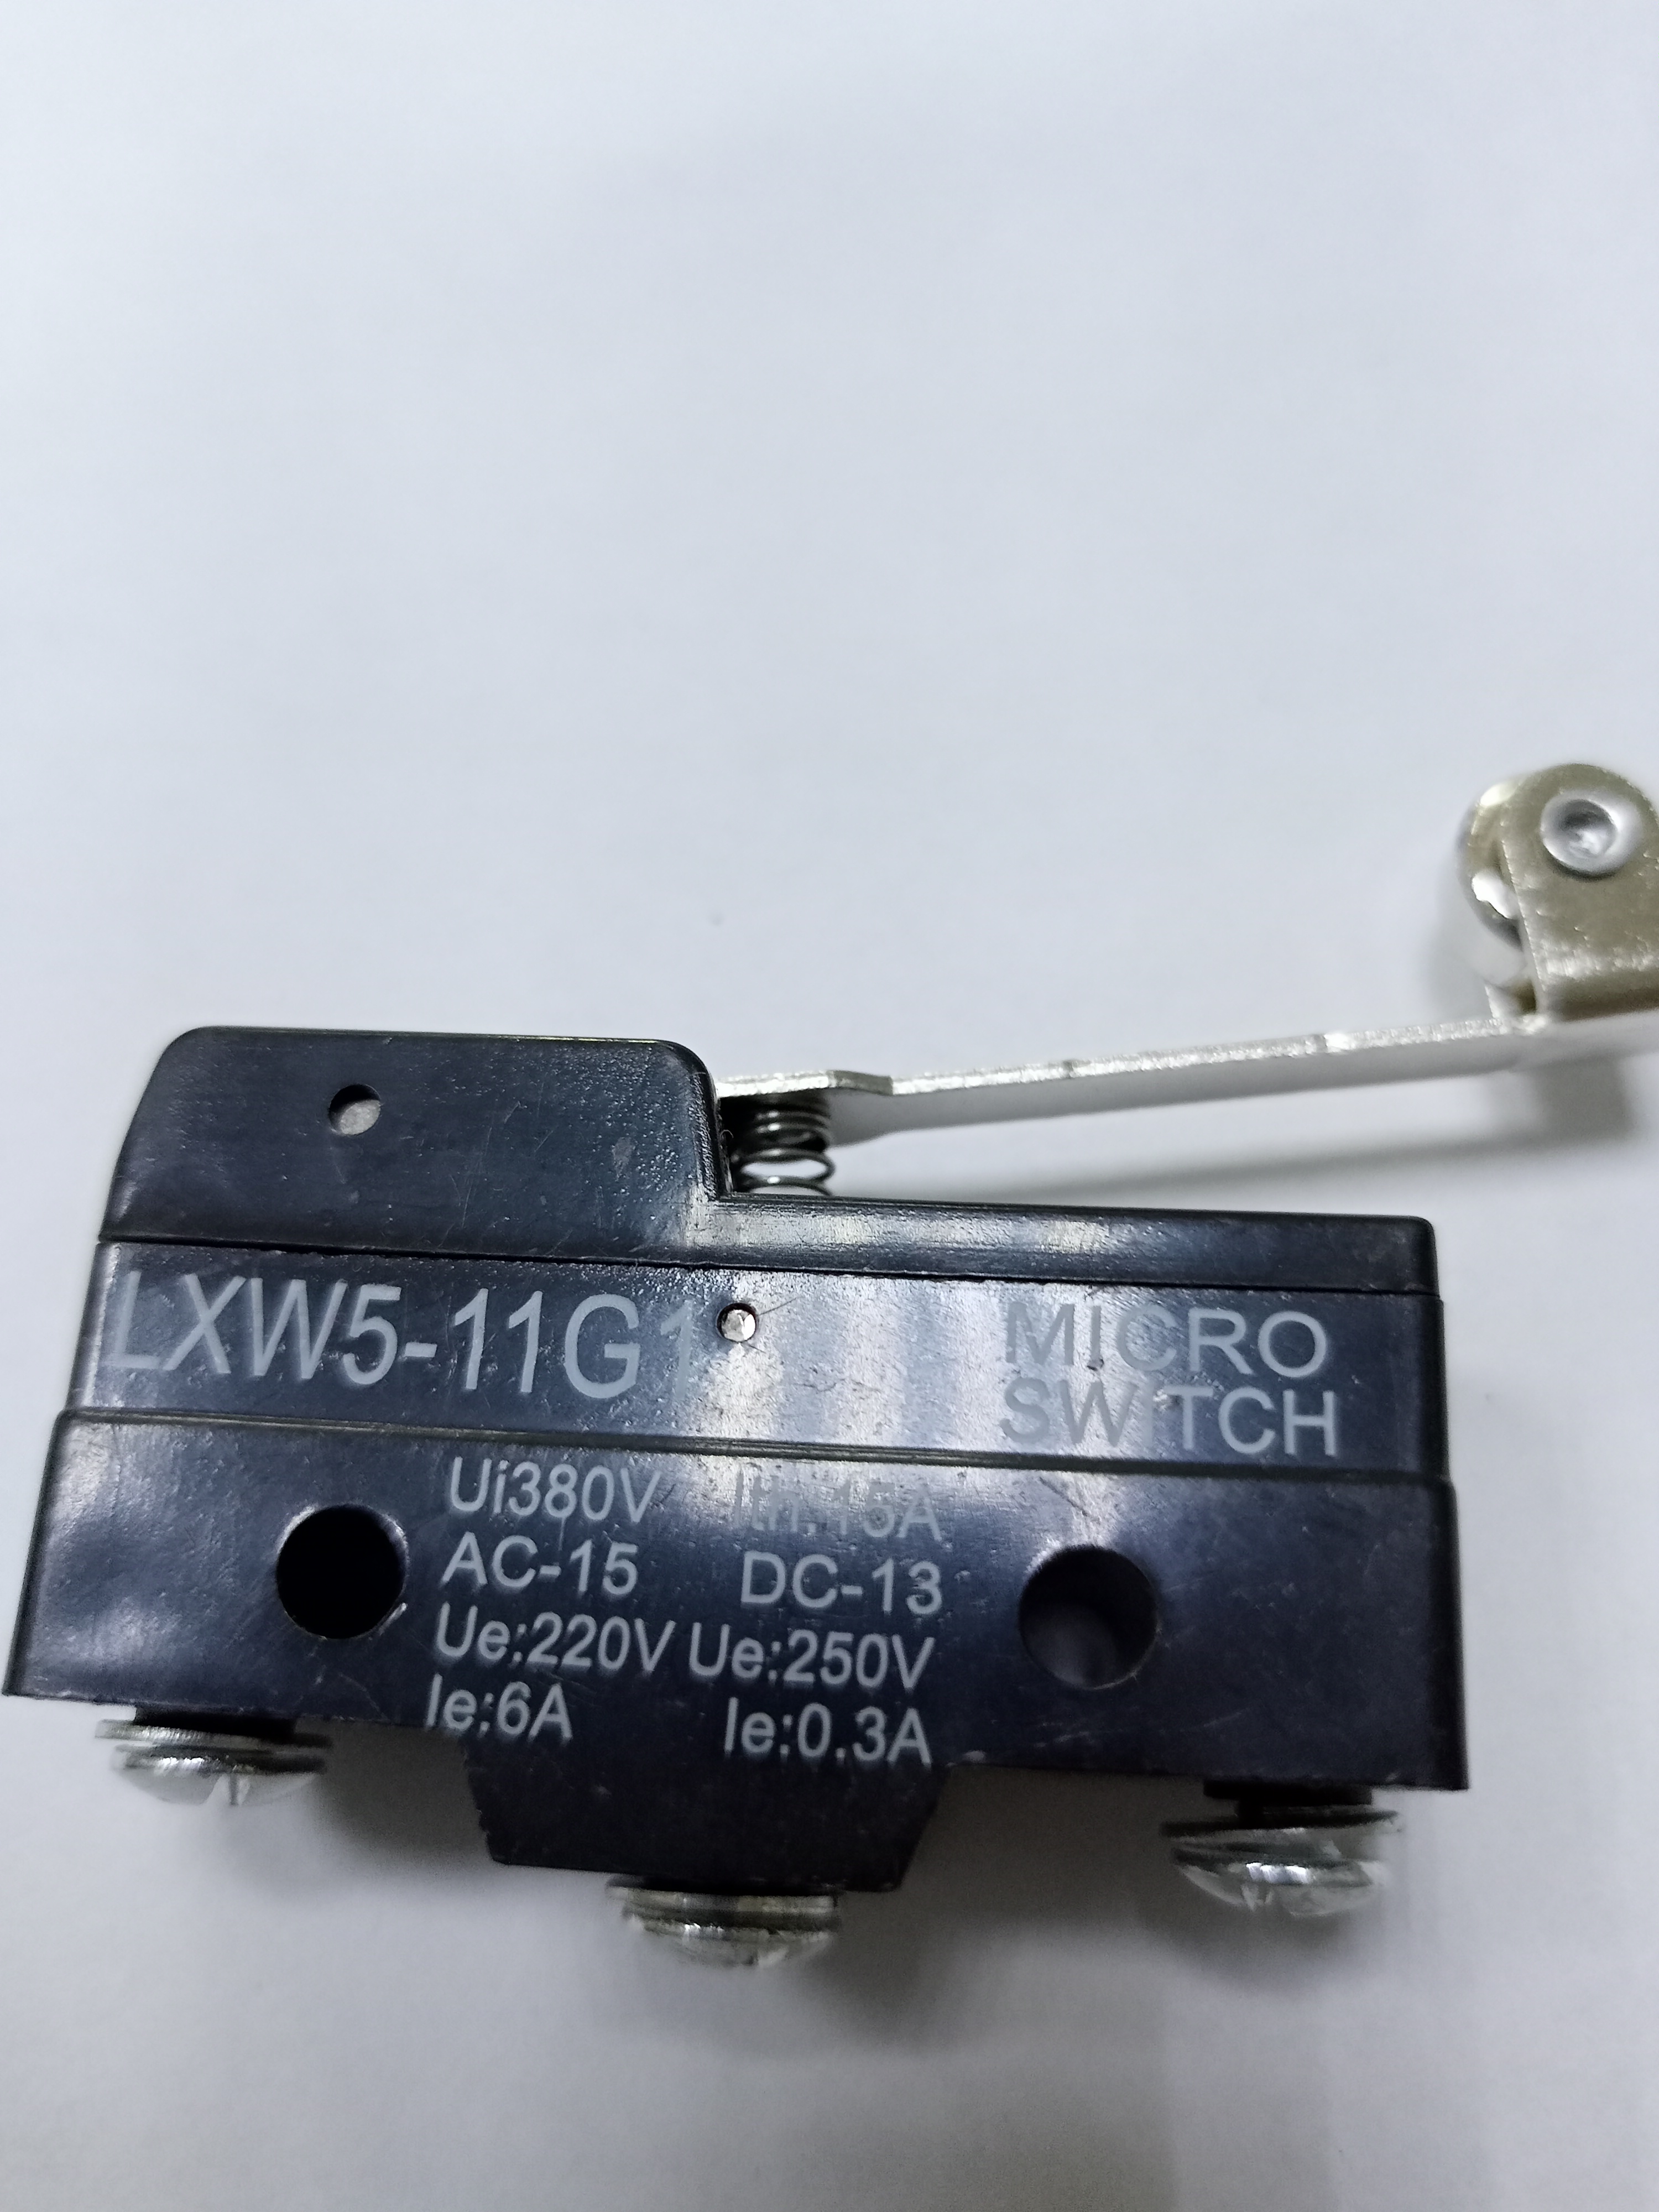     3205  Z-15GW2-B (PAZ 10037119)